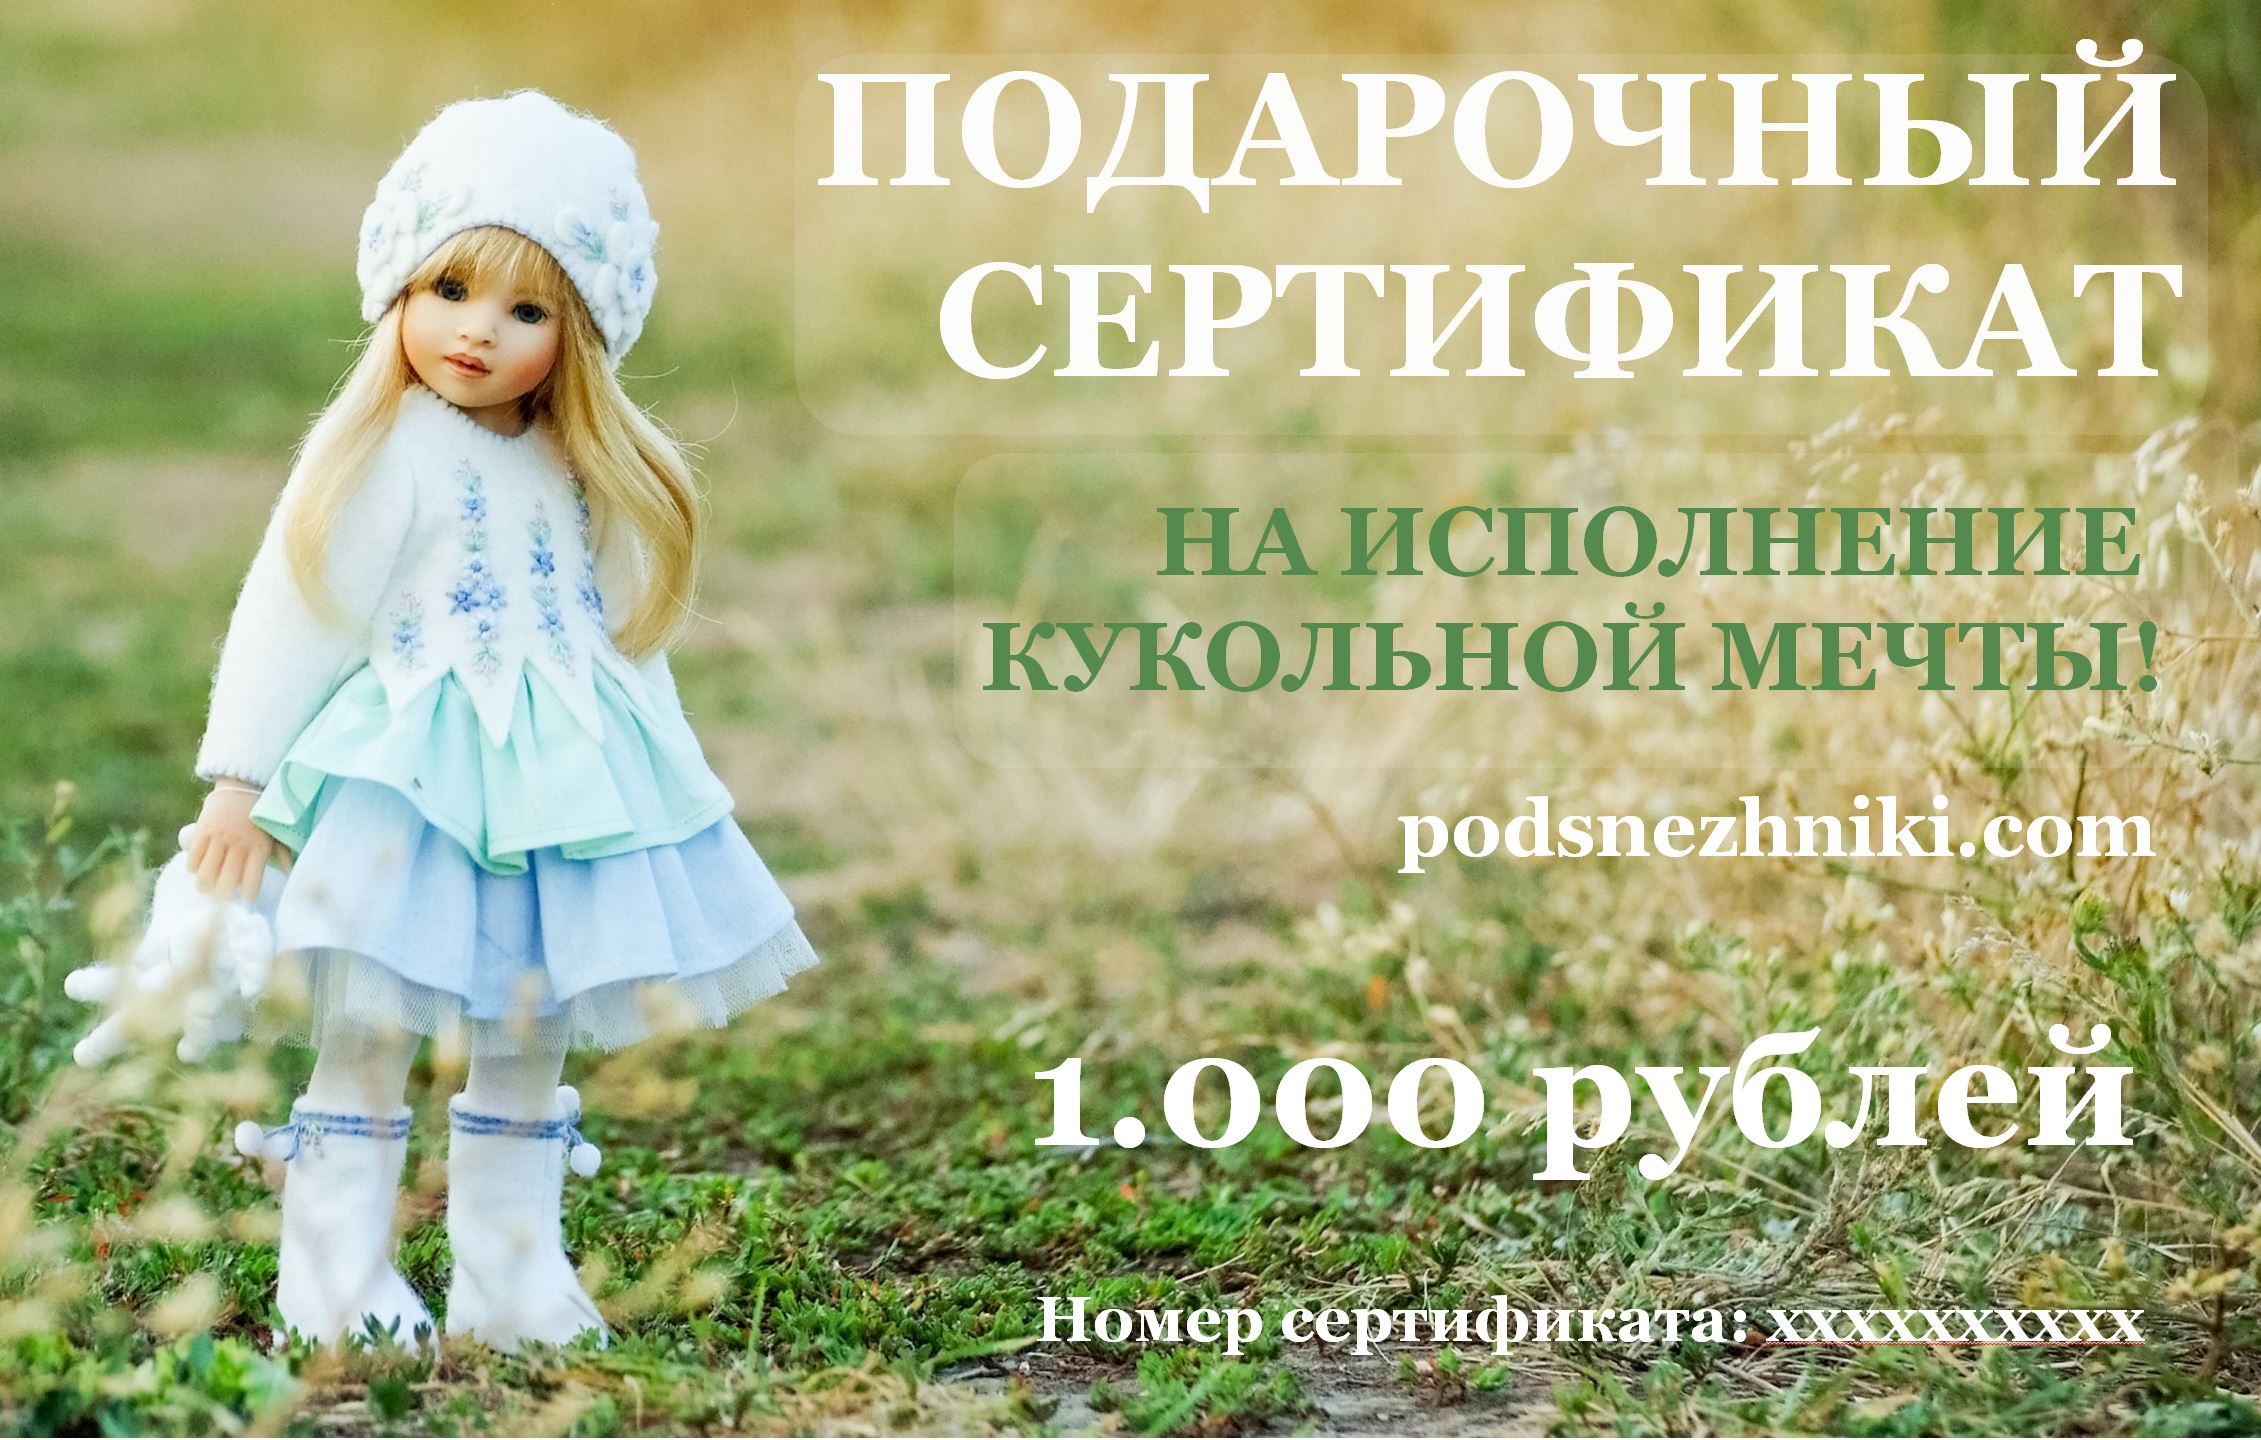 Подарочный сертификат 1000 руб. Подснежники